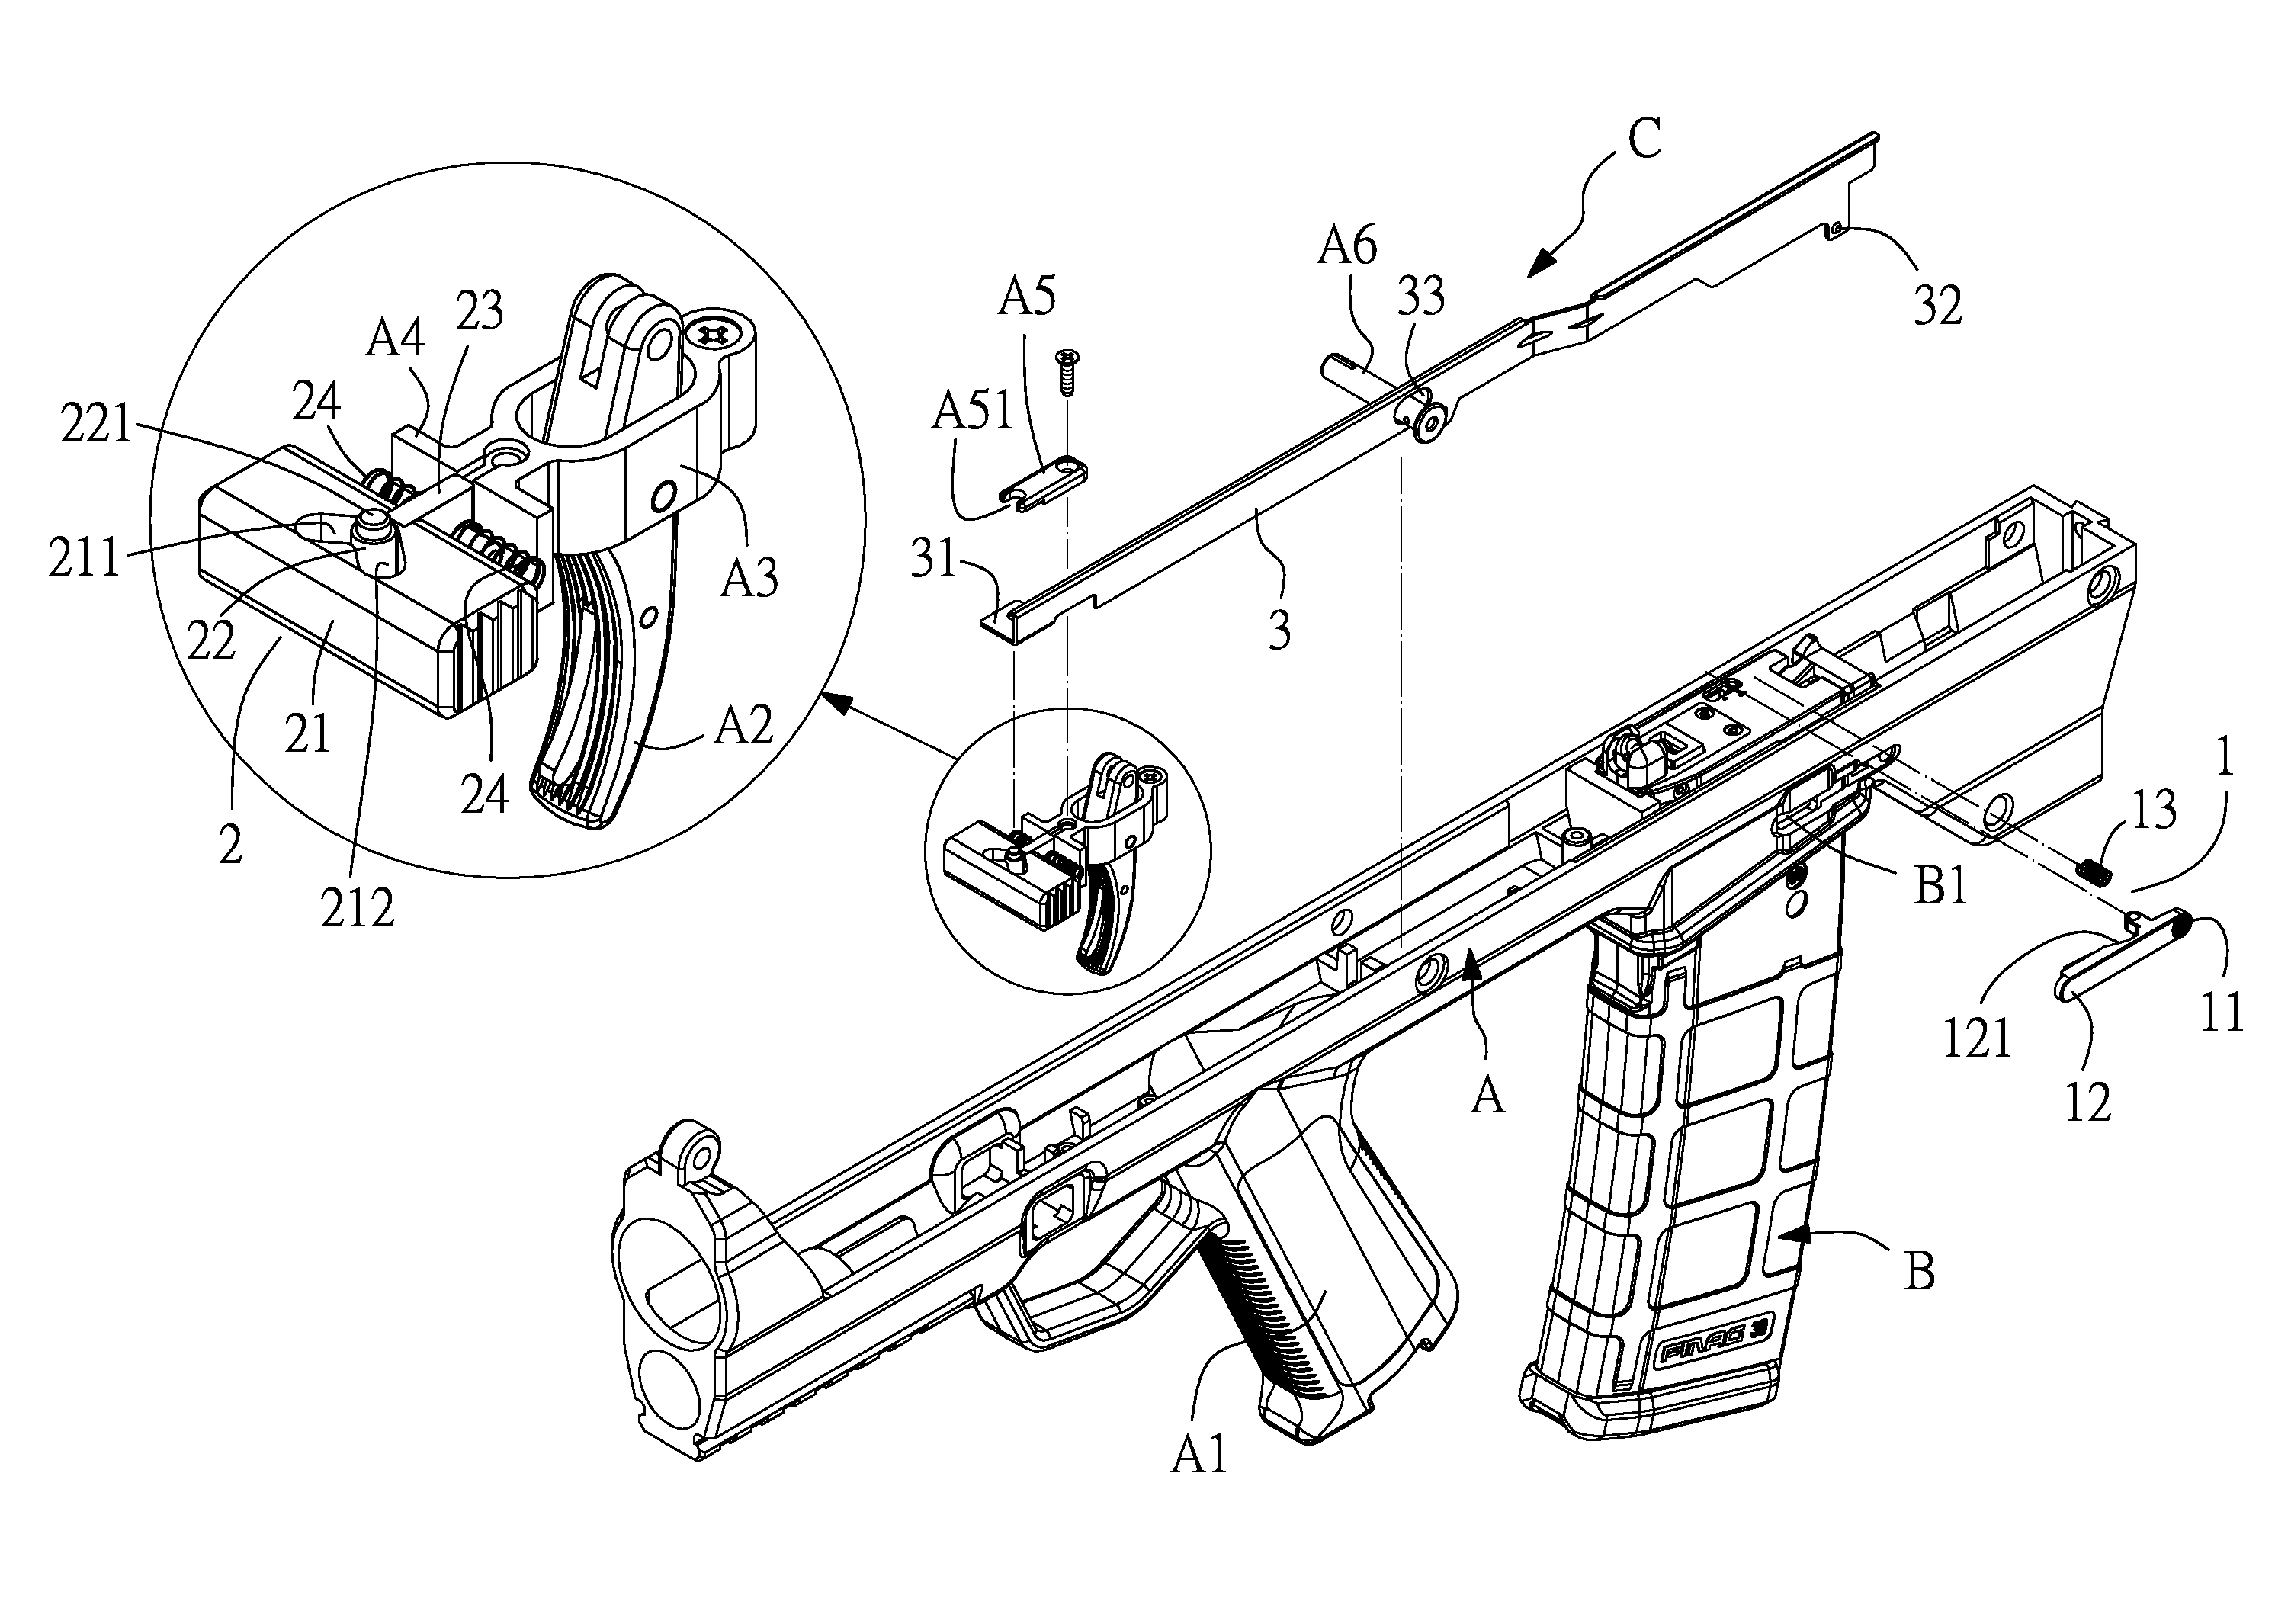 Magazine locking structure for gun